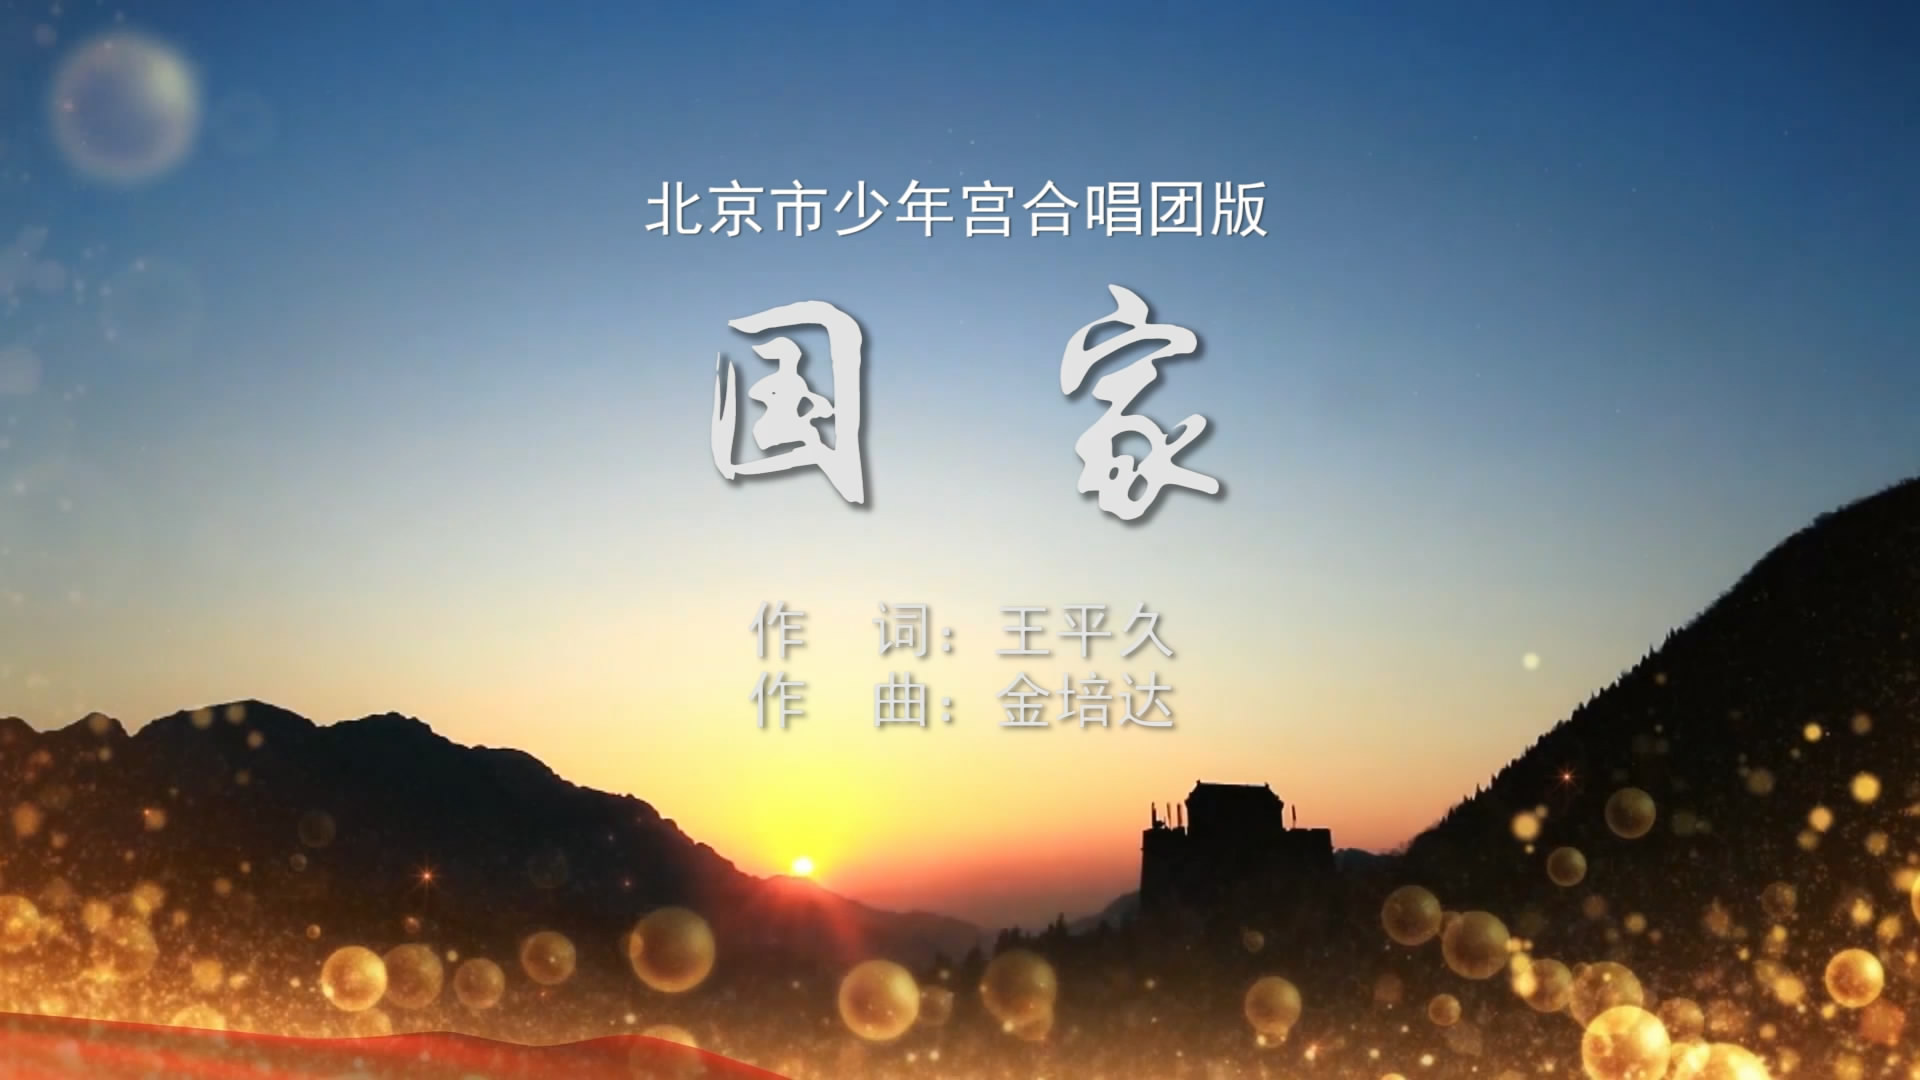 国家-北京少年宫合唱团 MV字幕配乐伴奏舞台演出LED背景大屏幕视频素材TV